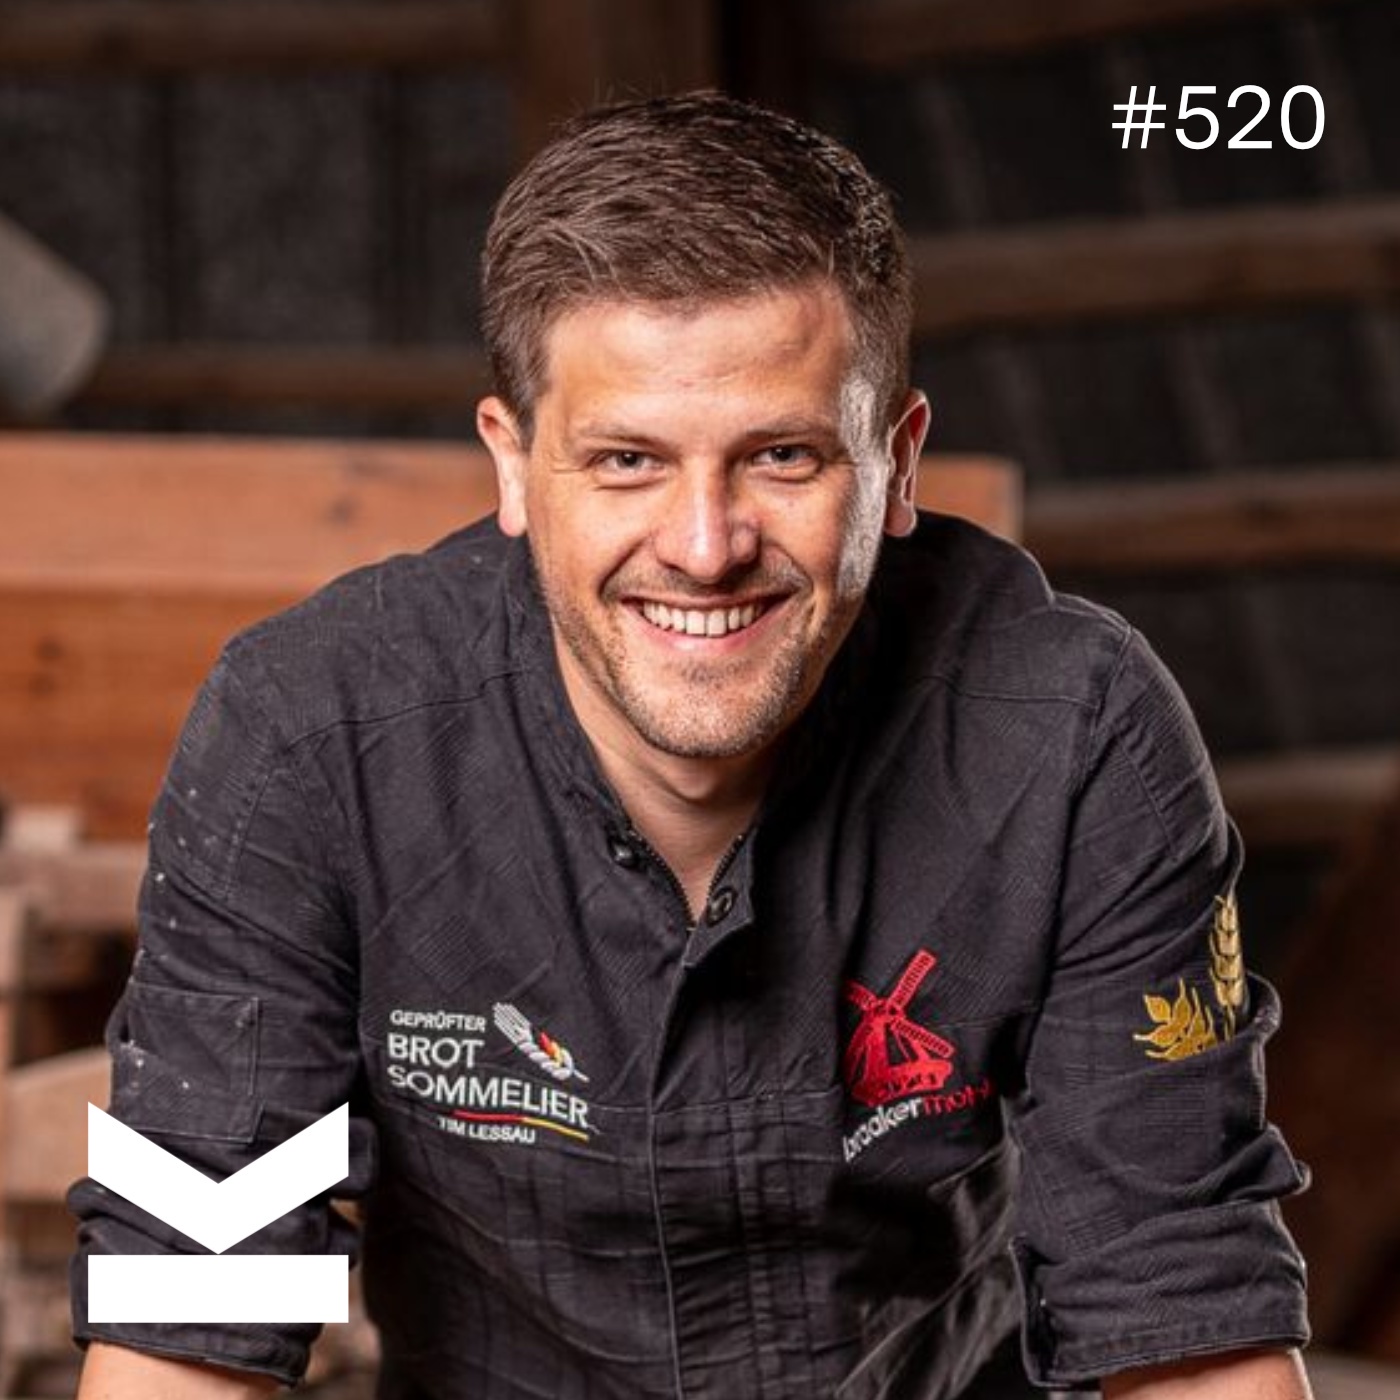 K#520 BRAAKER MÜHLE  Chef Tim Lessau